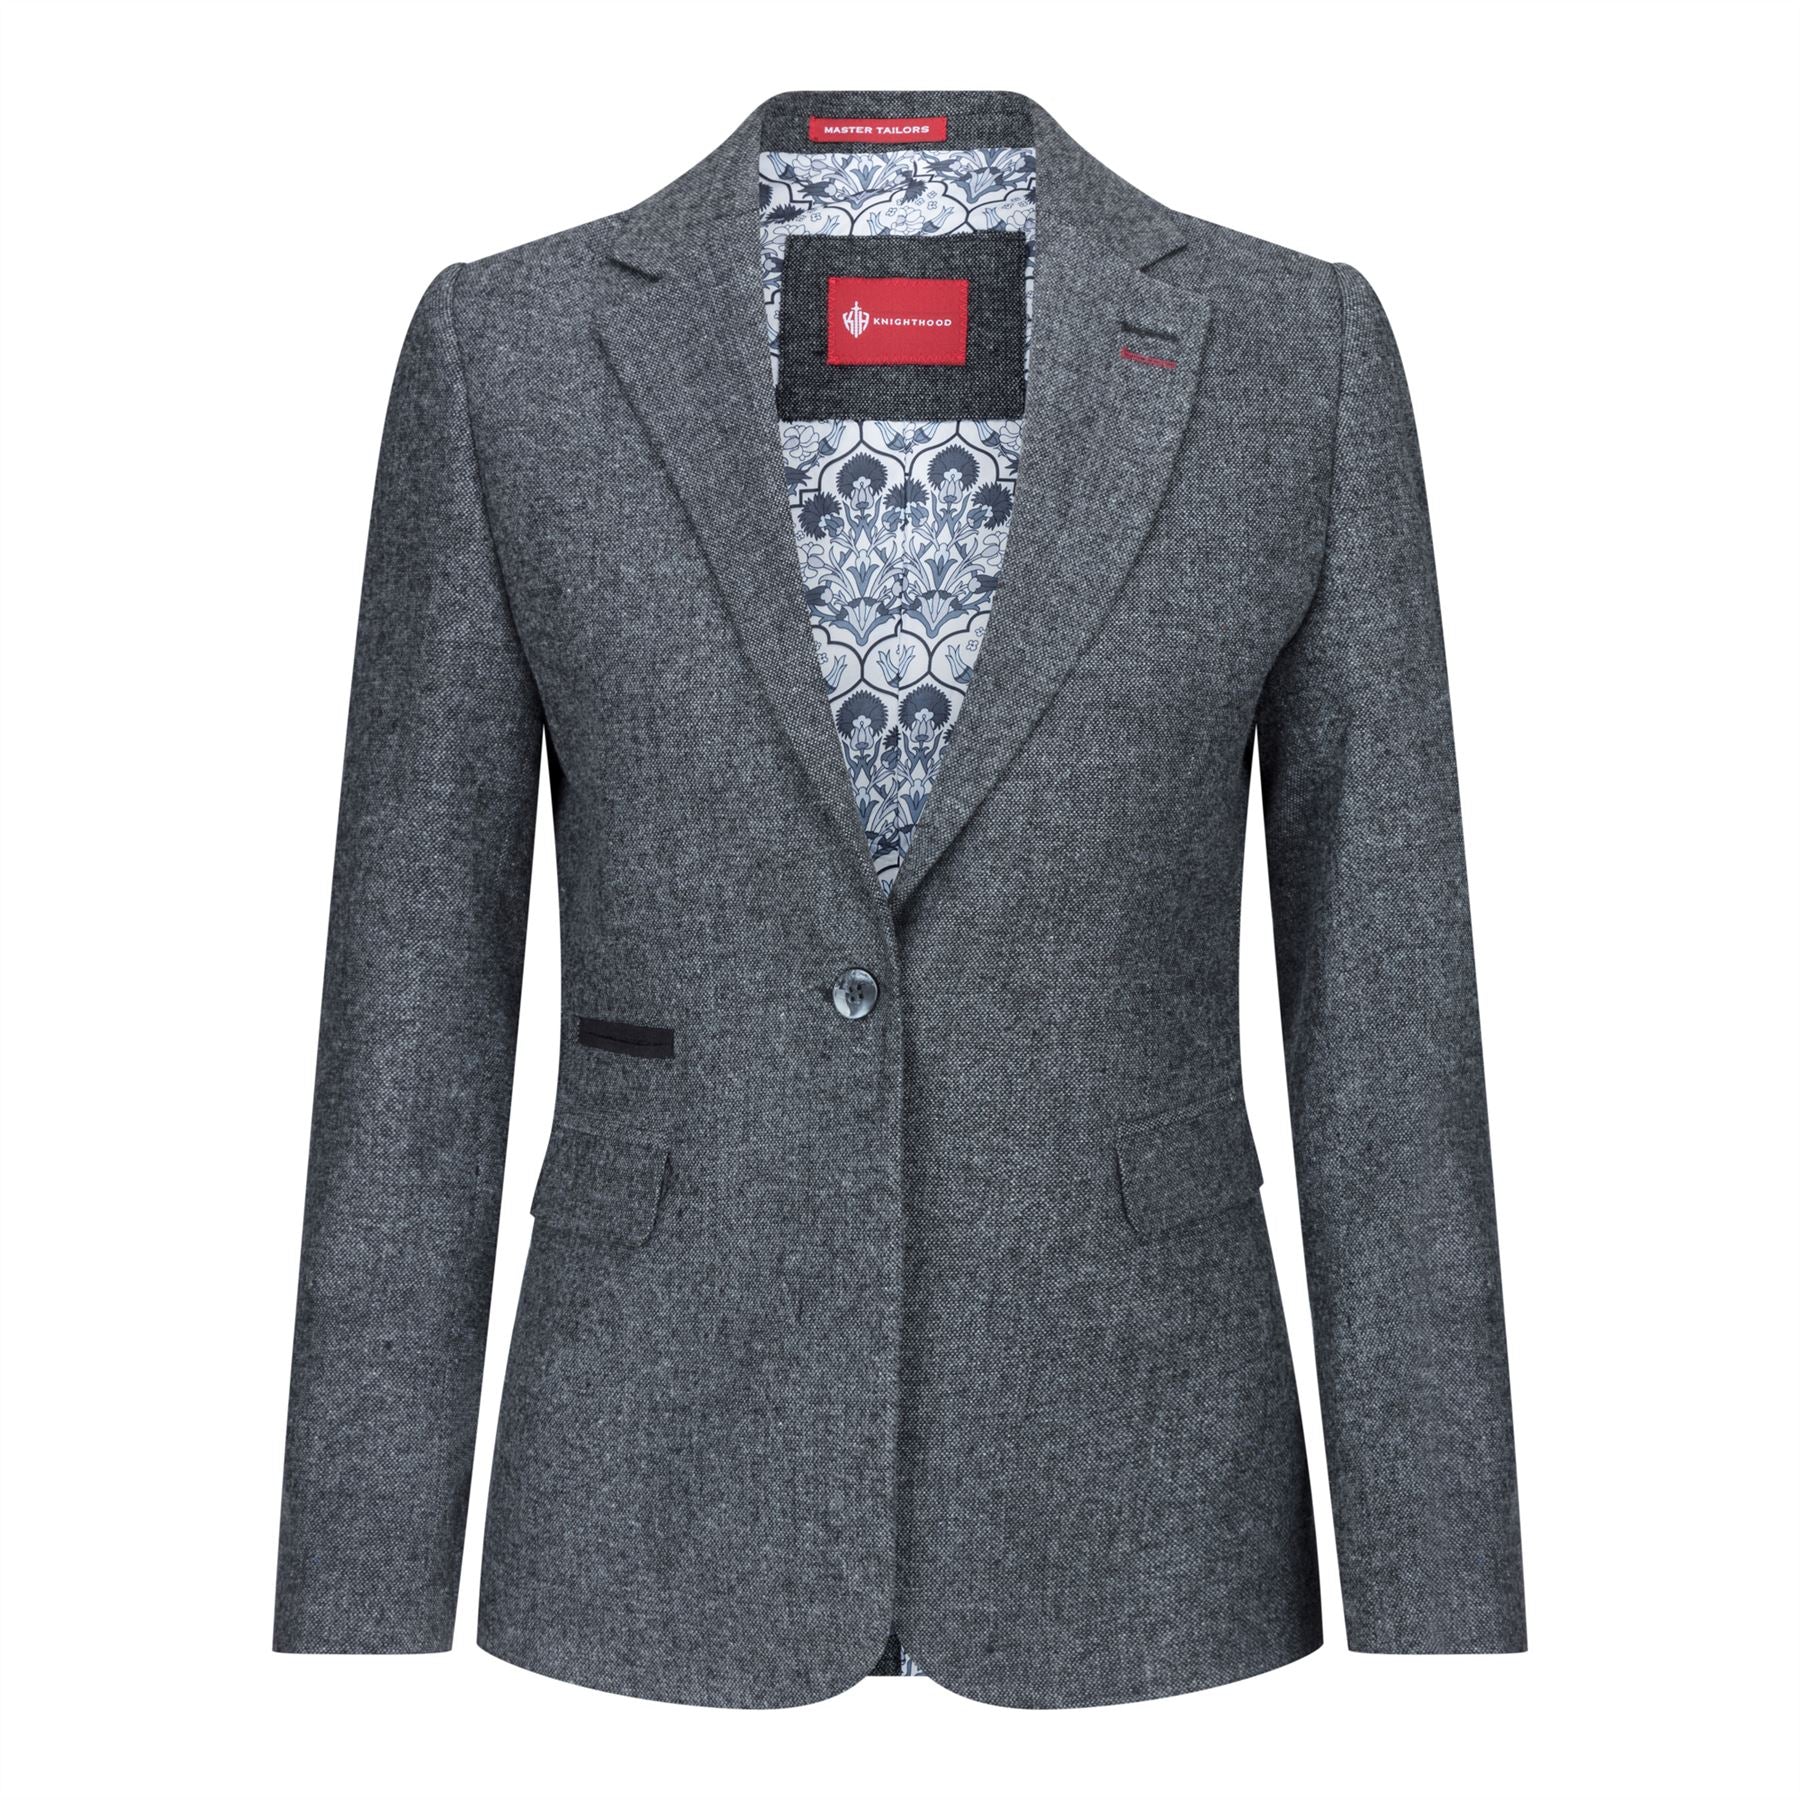 Damen Blazer Anzug Wolle Tweed Ellenbogen Patch 1920s Vintage Klassisch Grau